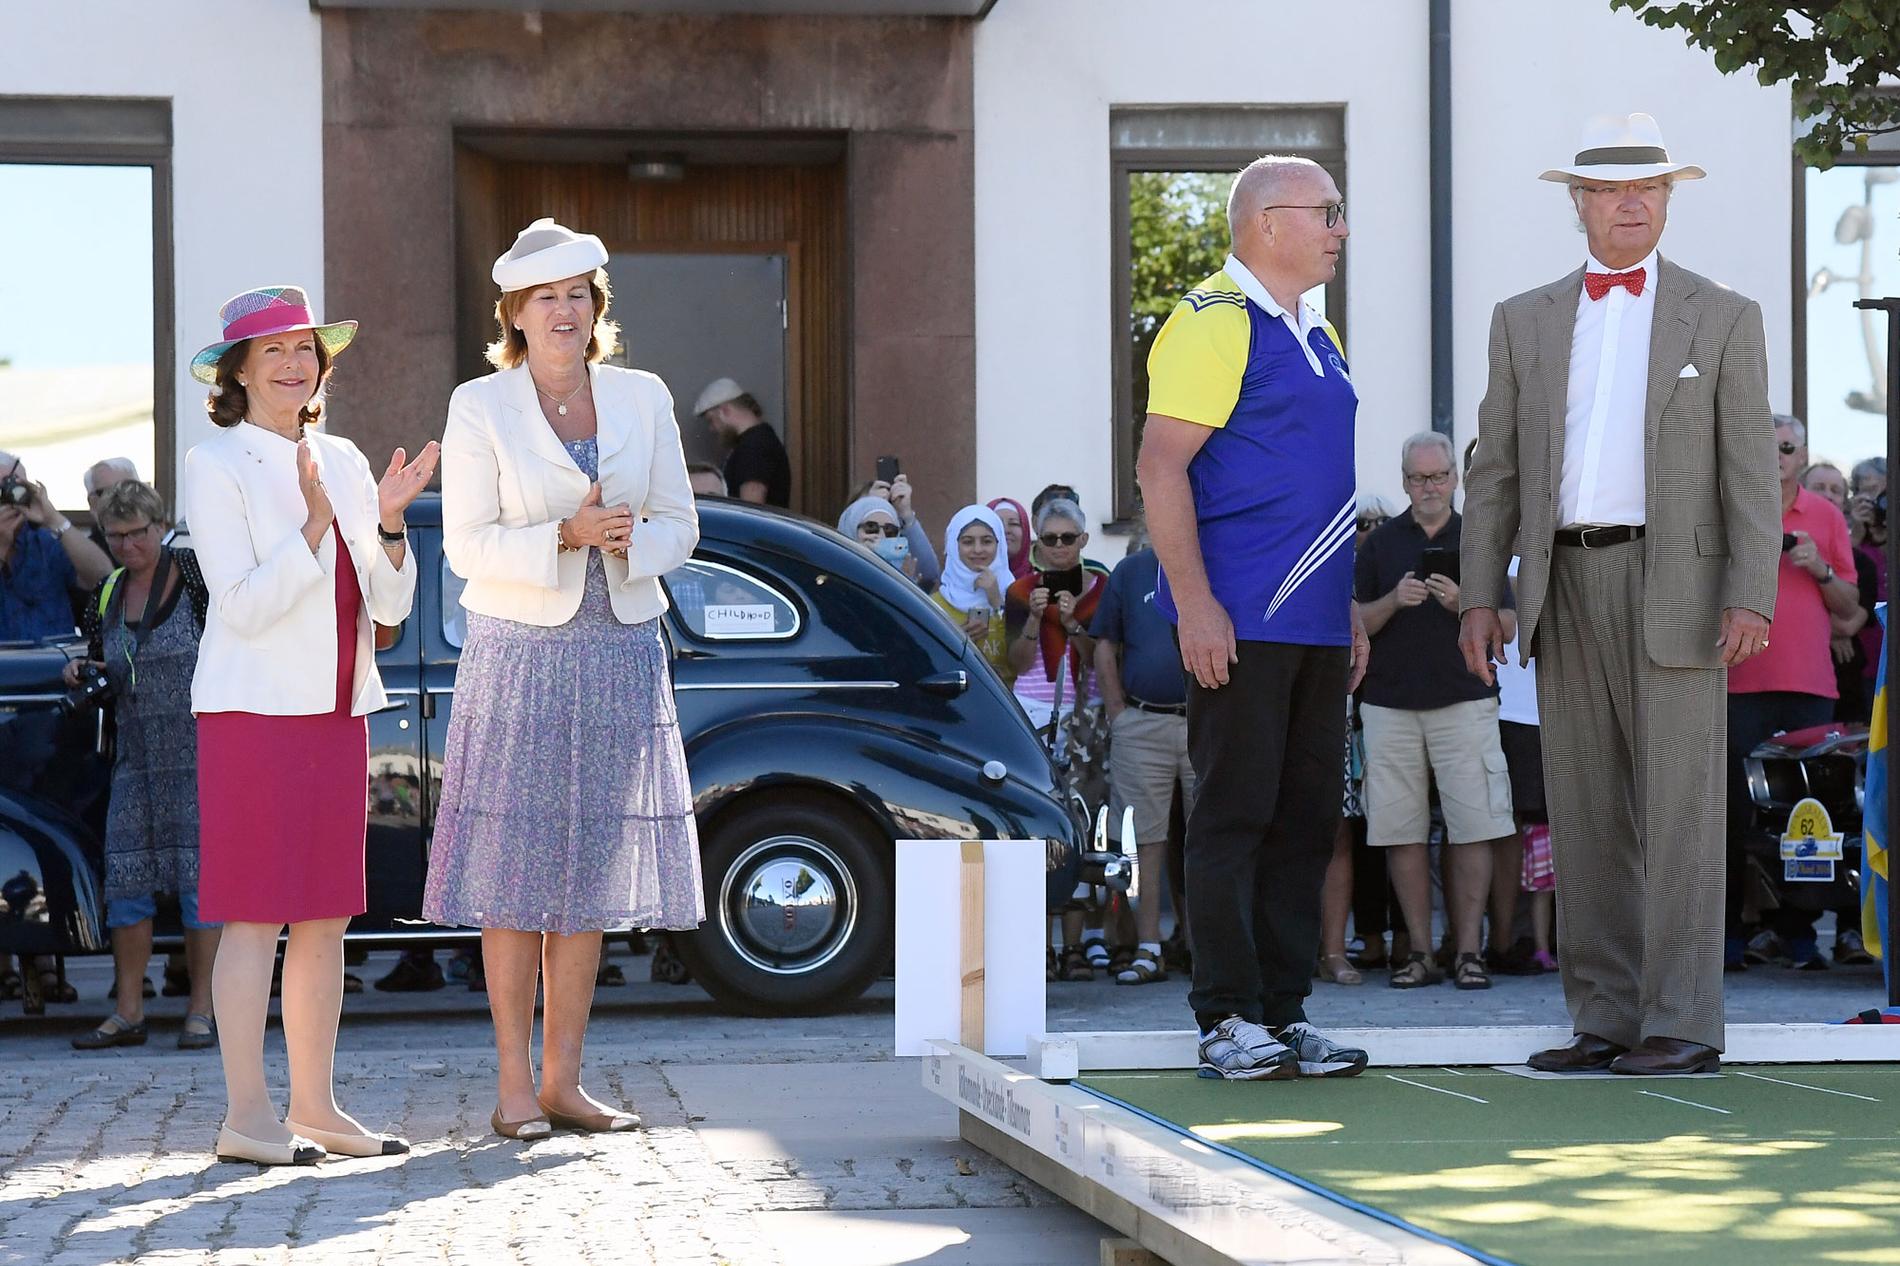 Drottning Silvia hejar på medan kungen spelar lawn bowls, en brittisk variant av boule, vid första kontrollen under rallyt.